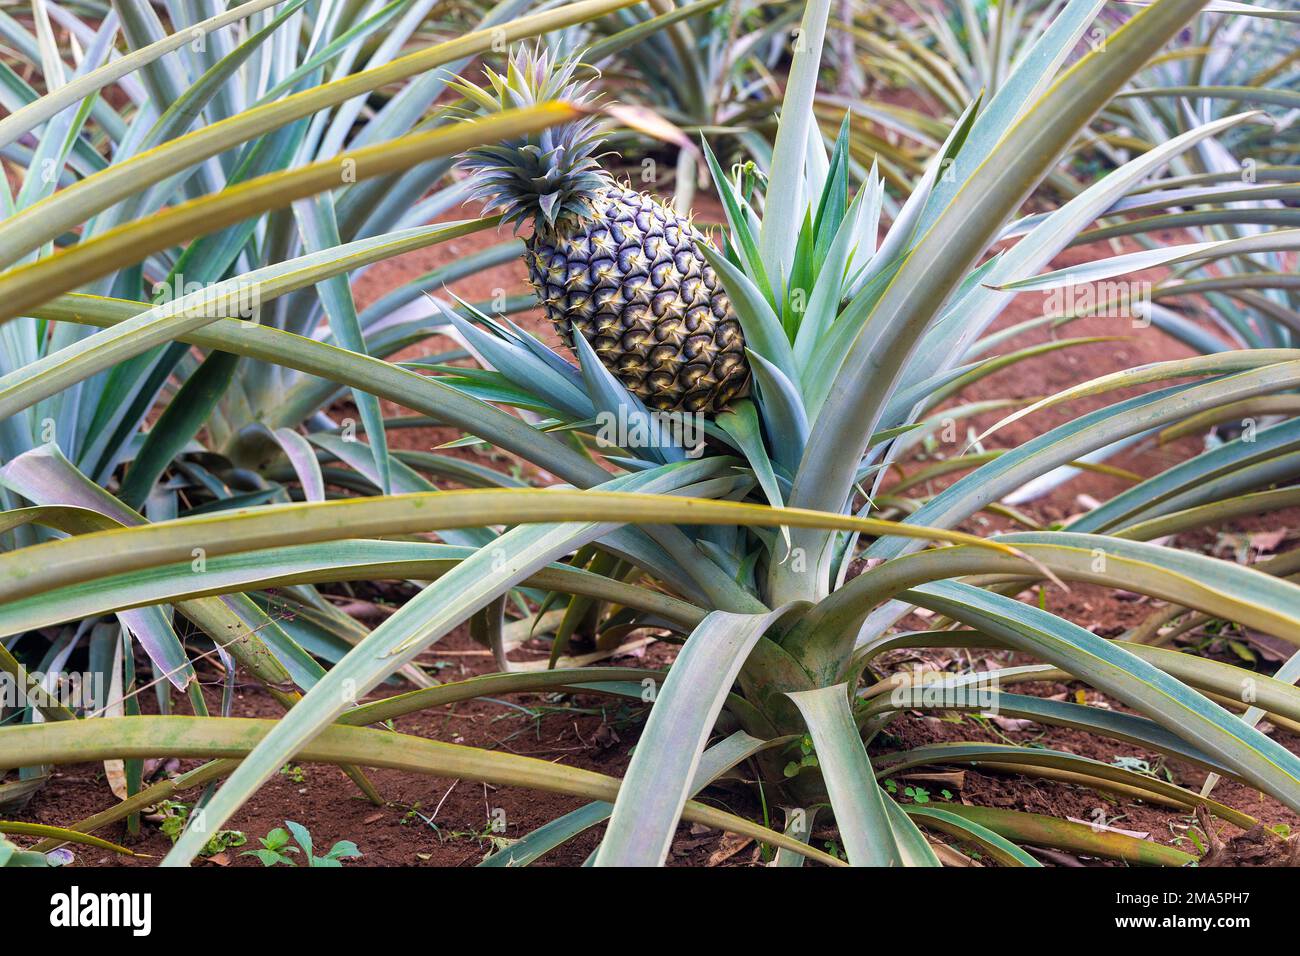 Pineapple growing in the garden, Vietnam Stock Photo